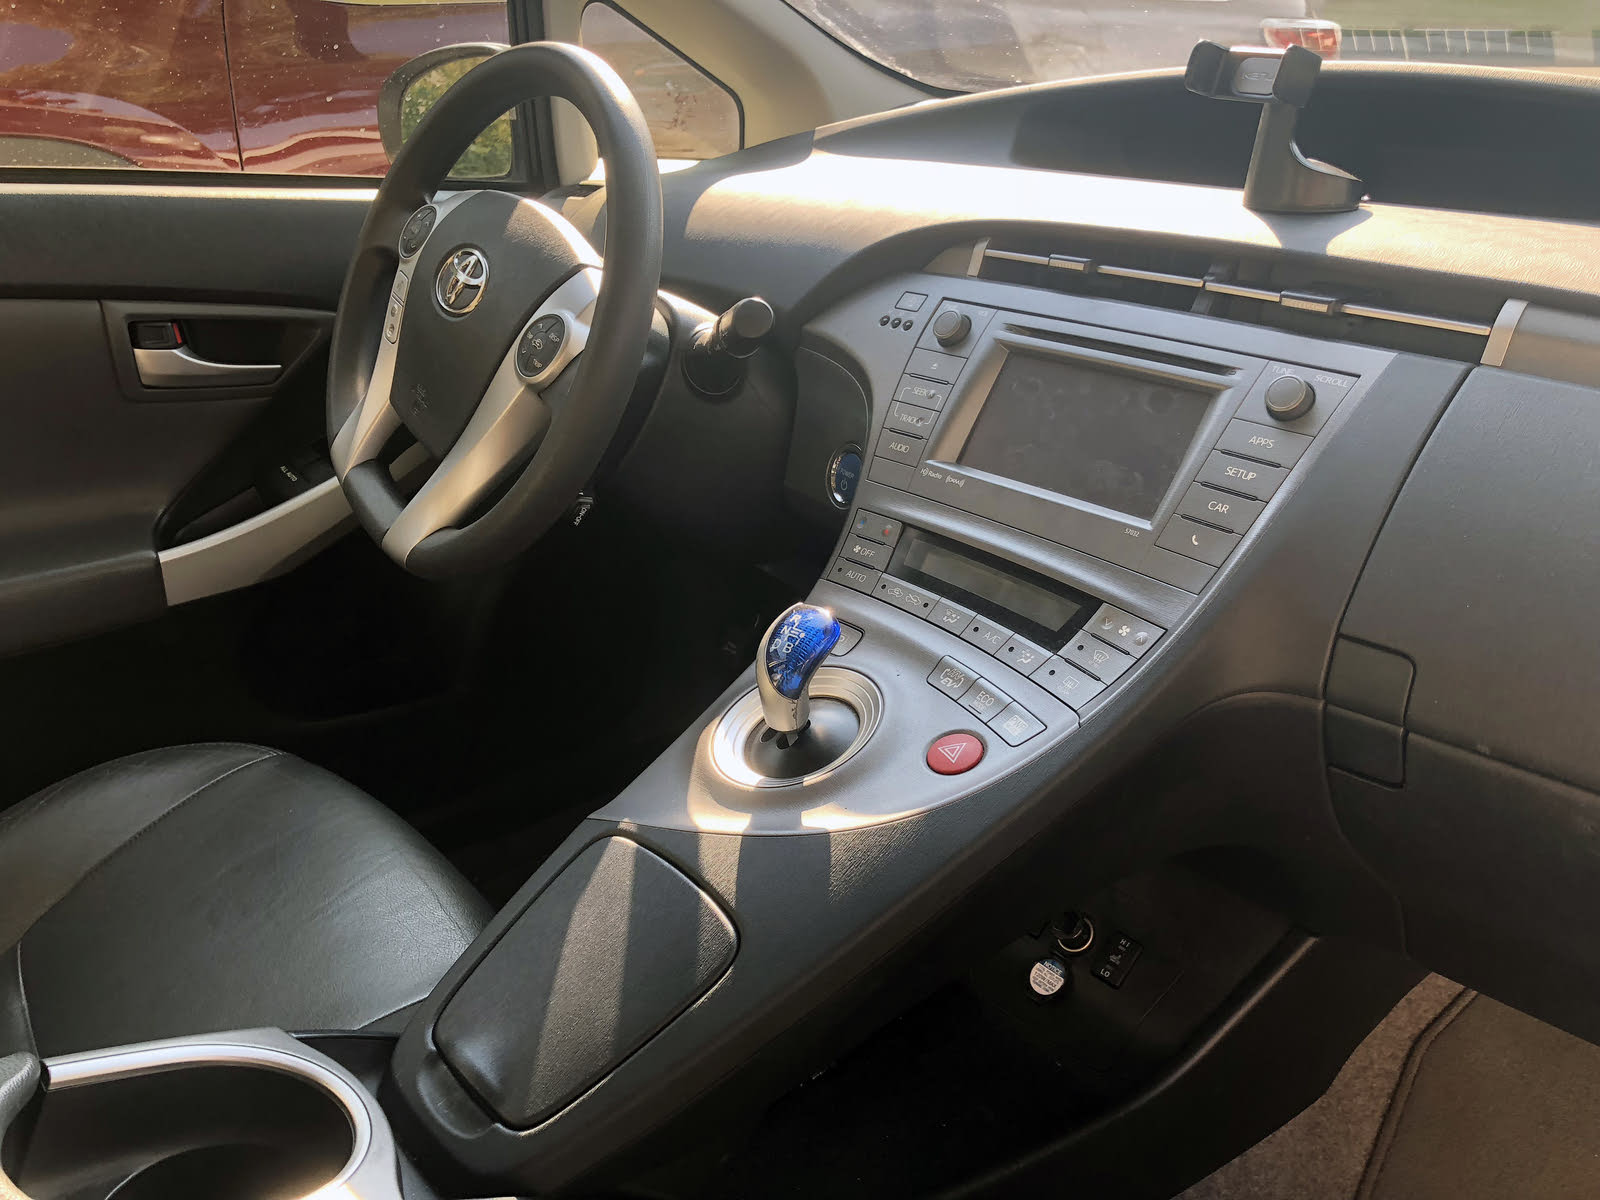 2012 Toyota Prius Plug In Interior Pictures Cargurus